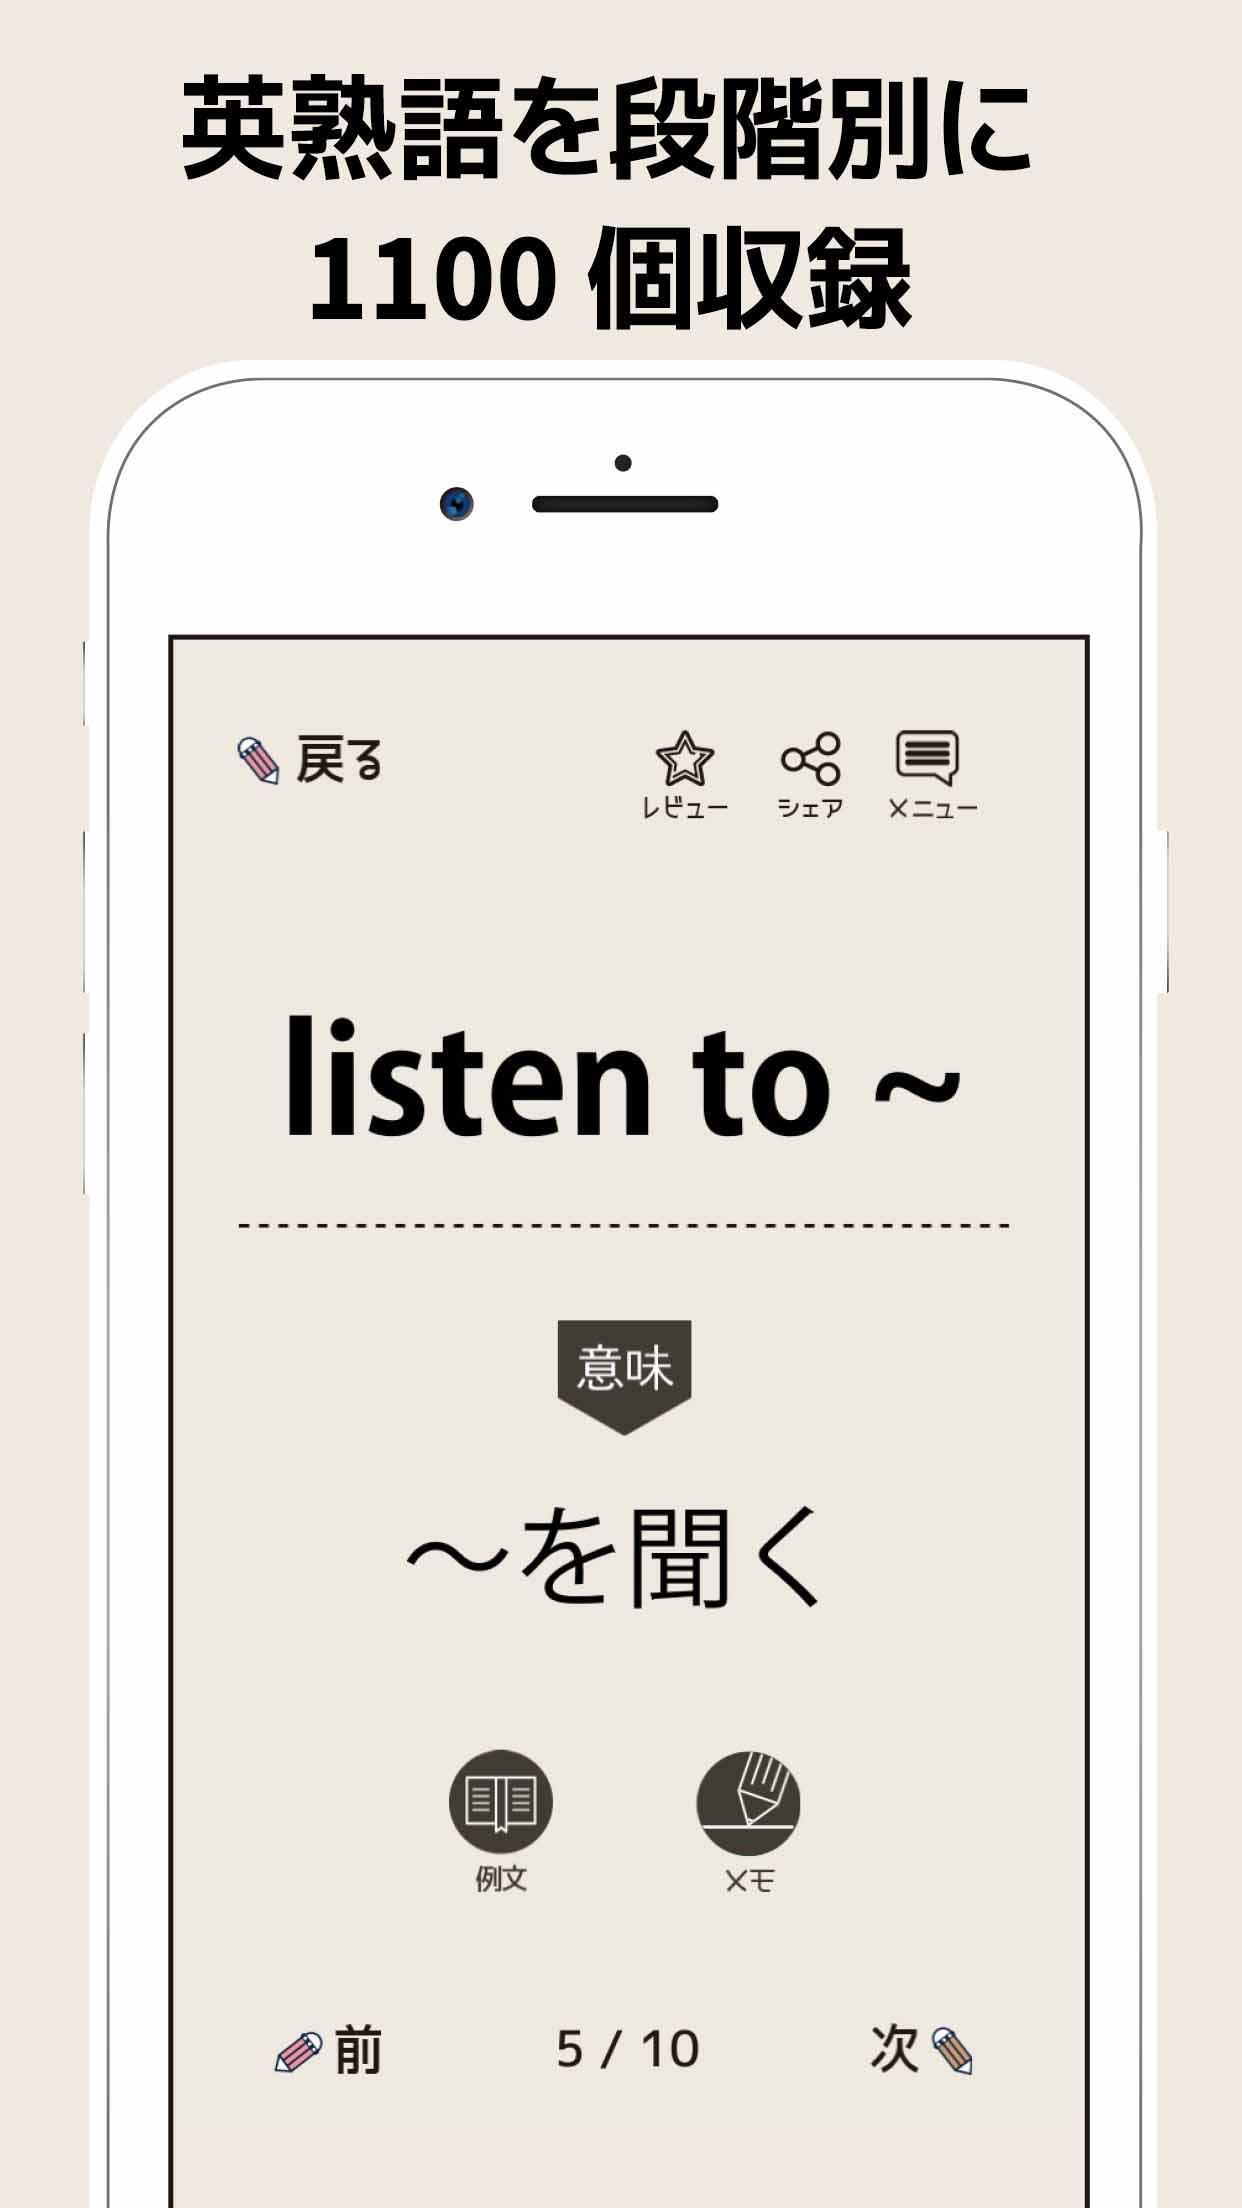 試験に出てくる英熟語1100 英語勉強アプリ 無料で学習が出来るおすすめアプリ For Android Apk Download